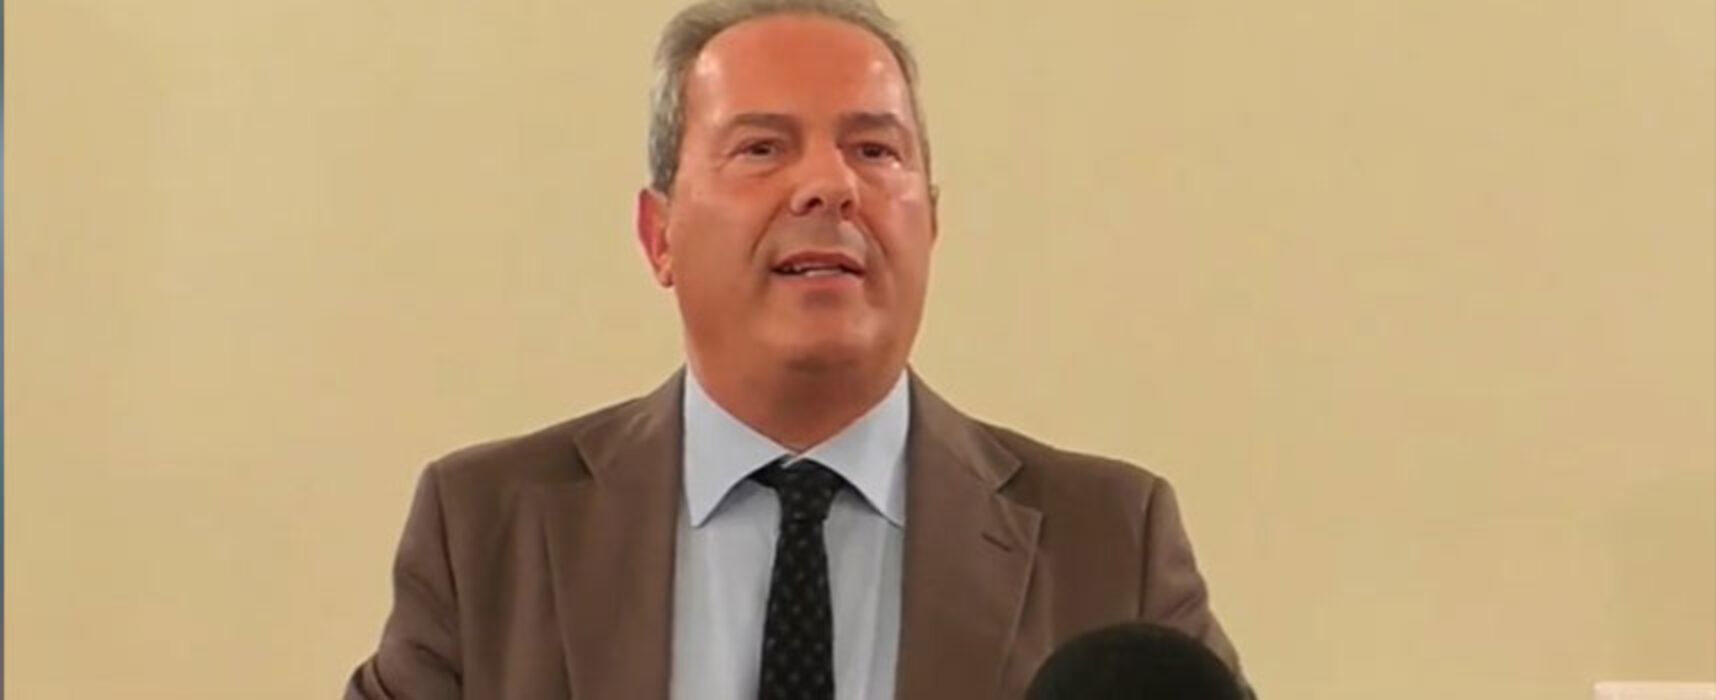 Azione, Spina: “Partito si caricherà responsabilità di restituire credibilità alla politica”